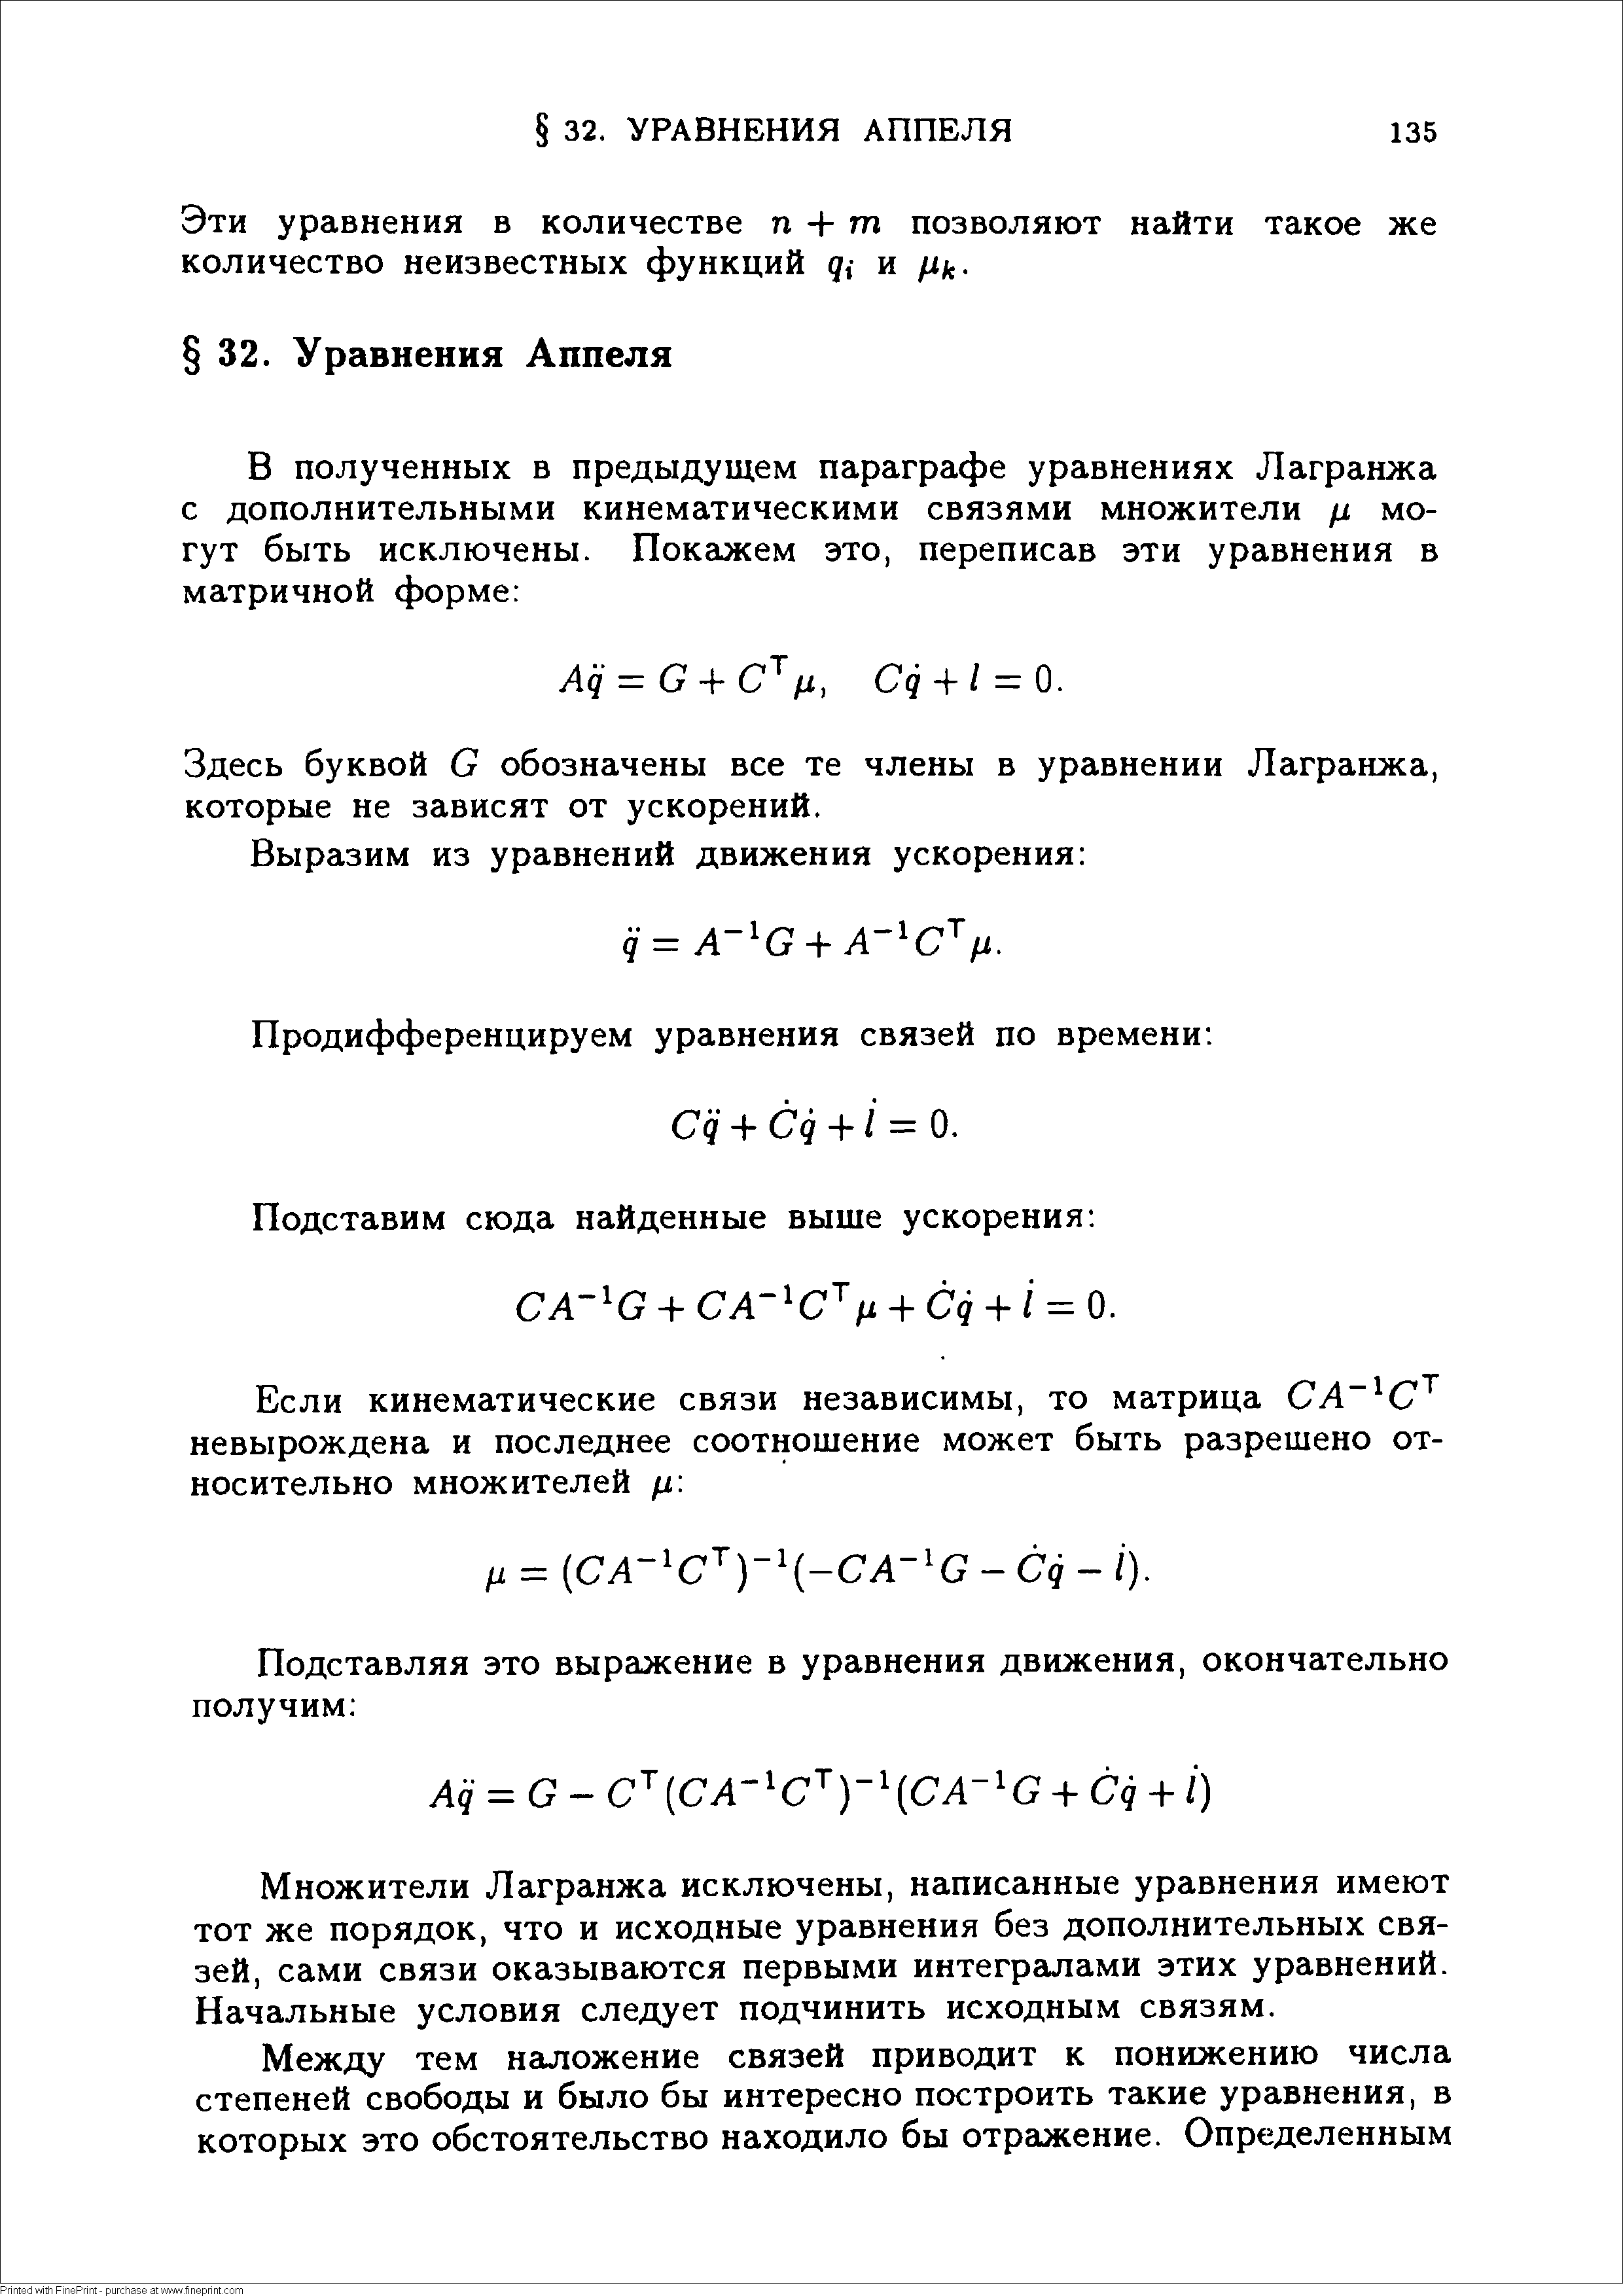 Эти уравнения в количестве п Ч- ш позволяют найти такое же количество неизвестных функций д,- и /1 .
